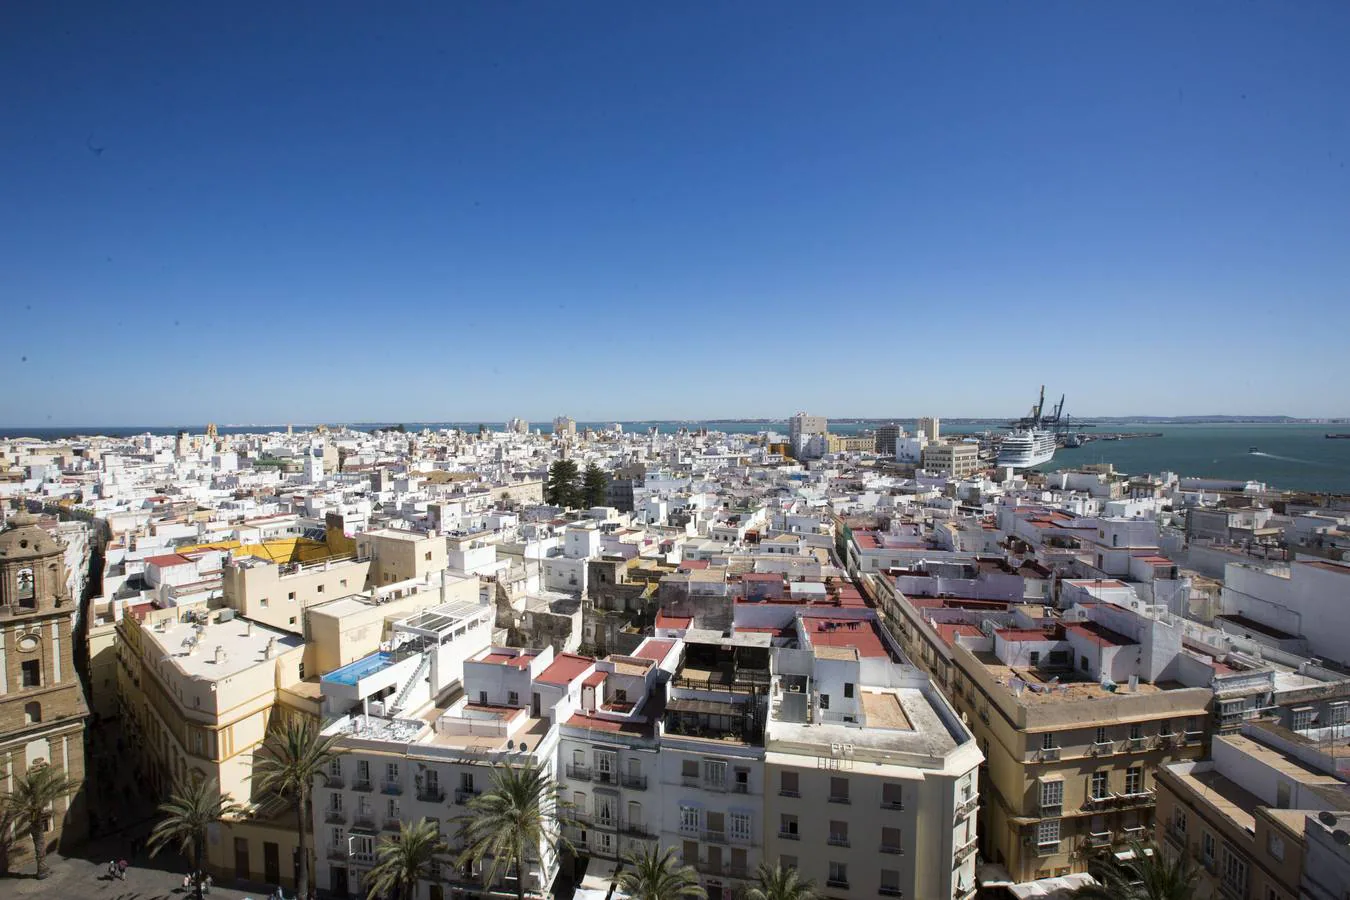 La catedral de Cádiz al descubierto